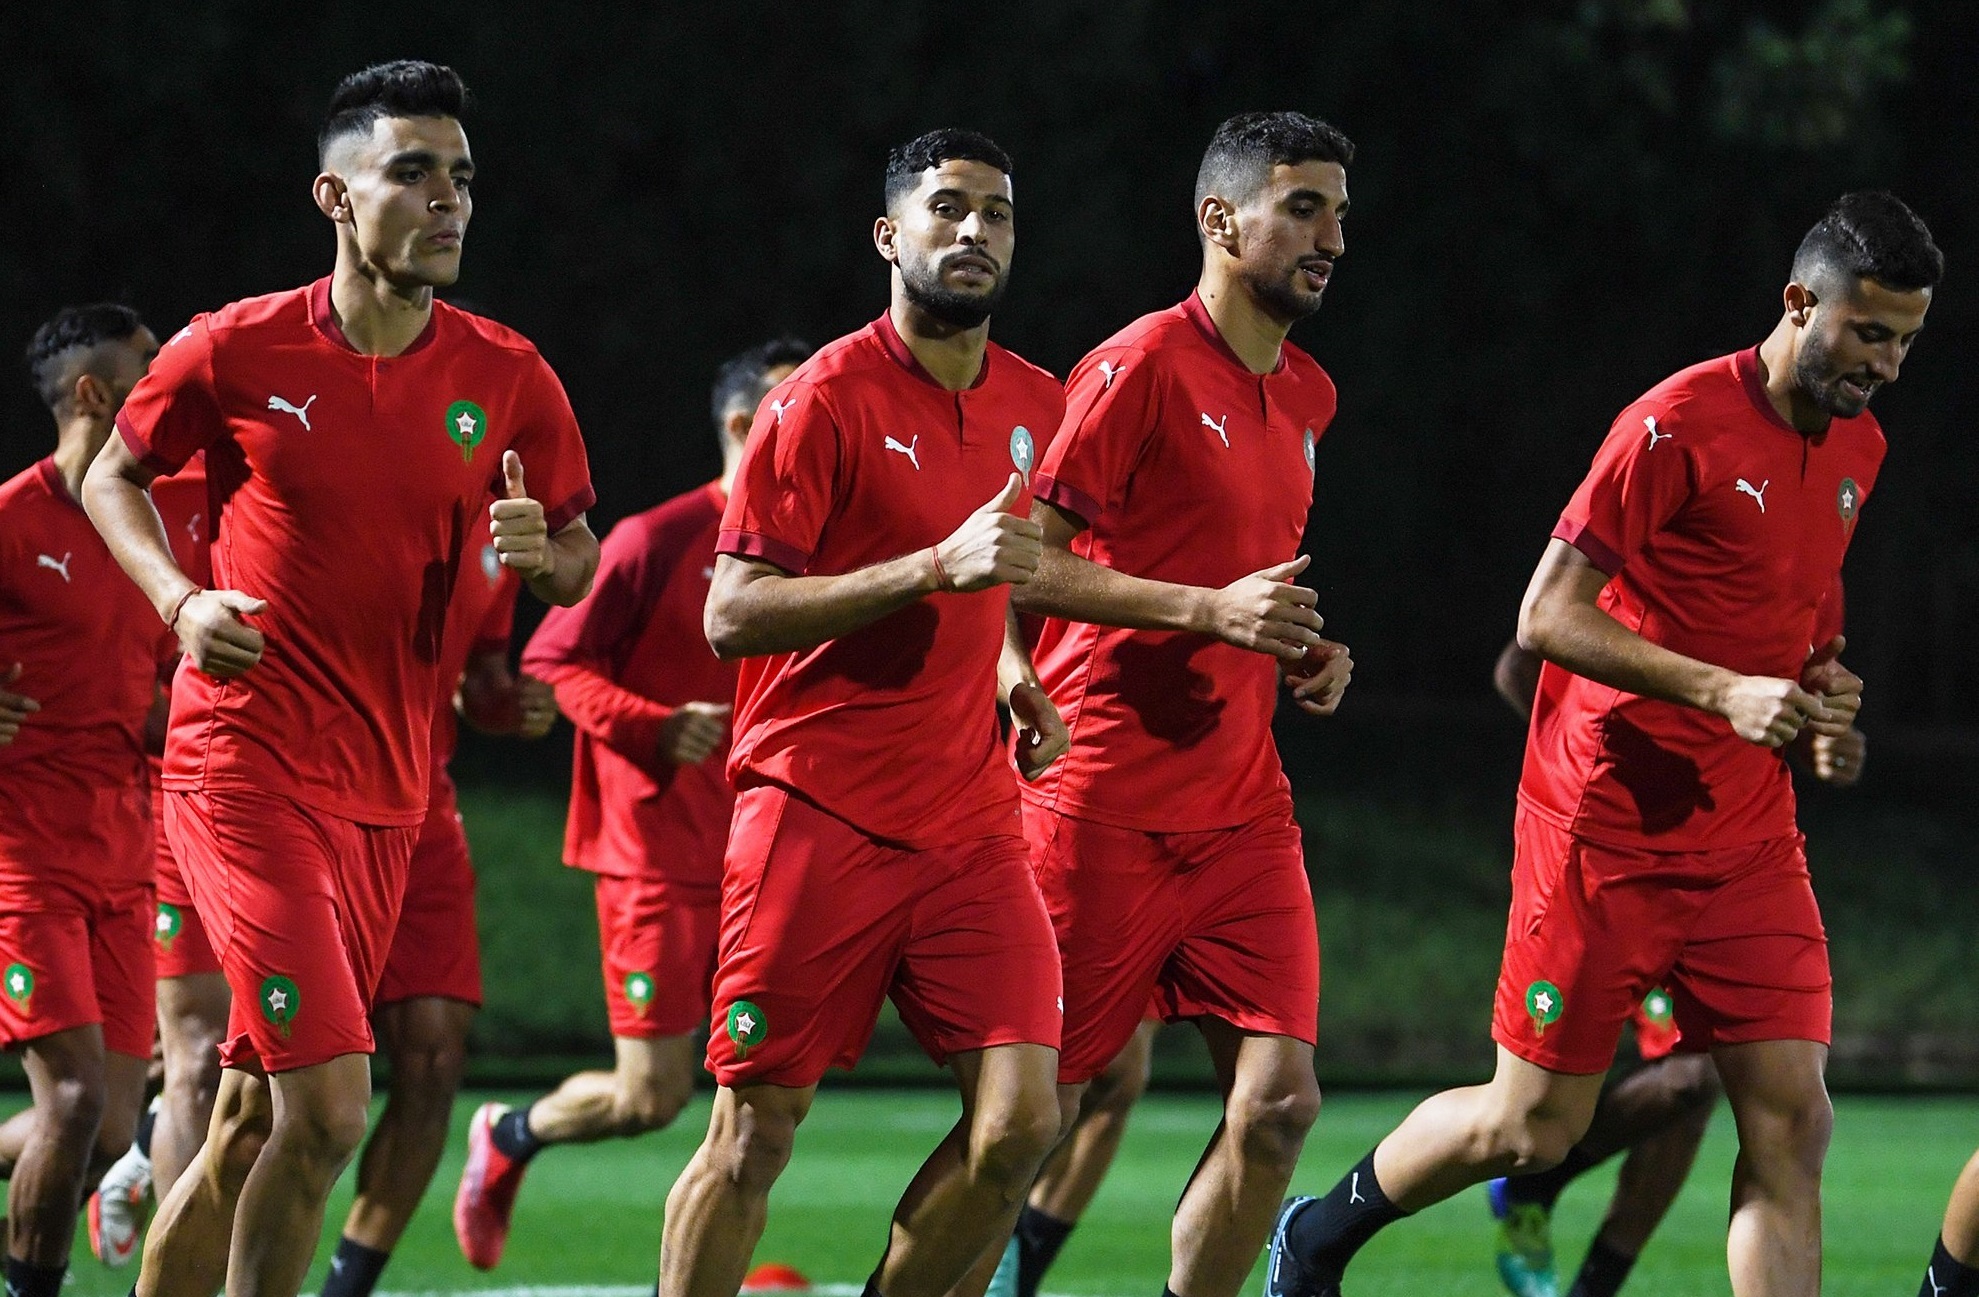 لاعبو المنتخب: الفوز على فلسطين مهم ونعد الجماهير بالفوز باللّقب العربي